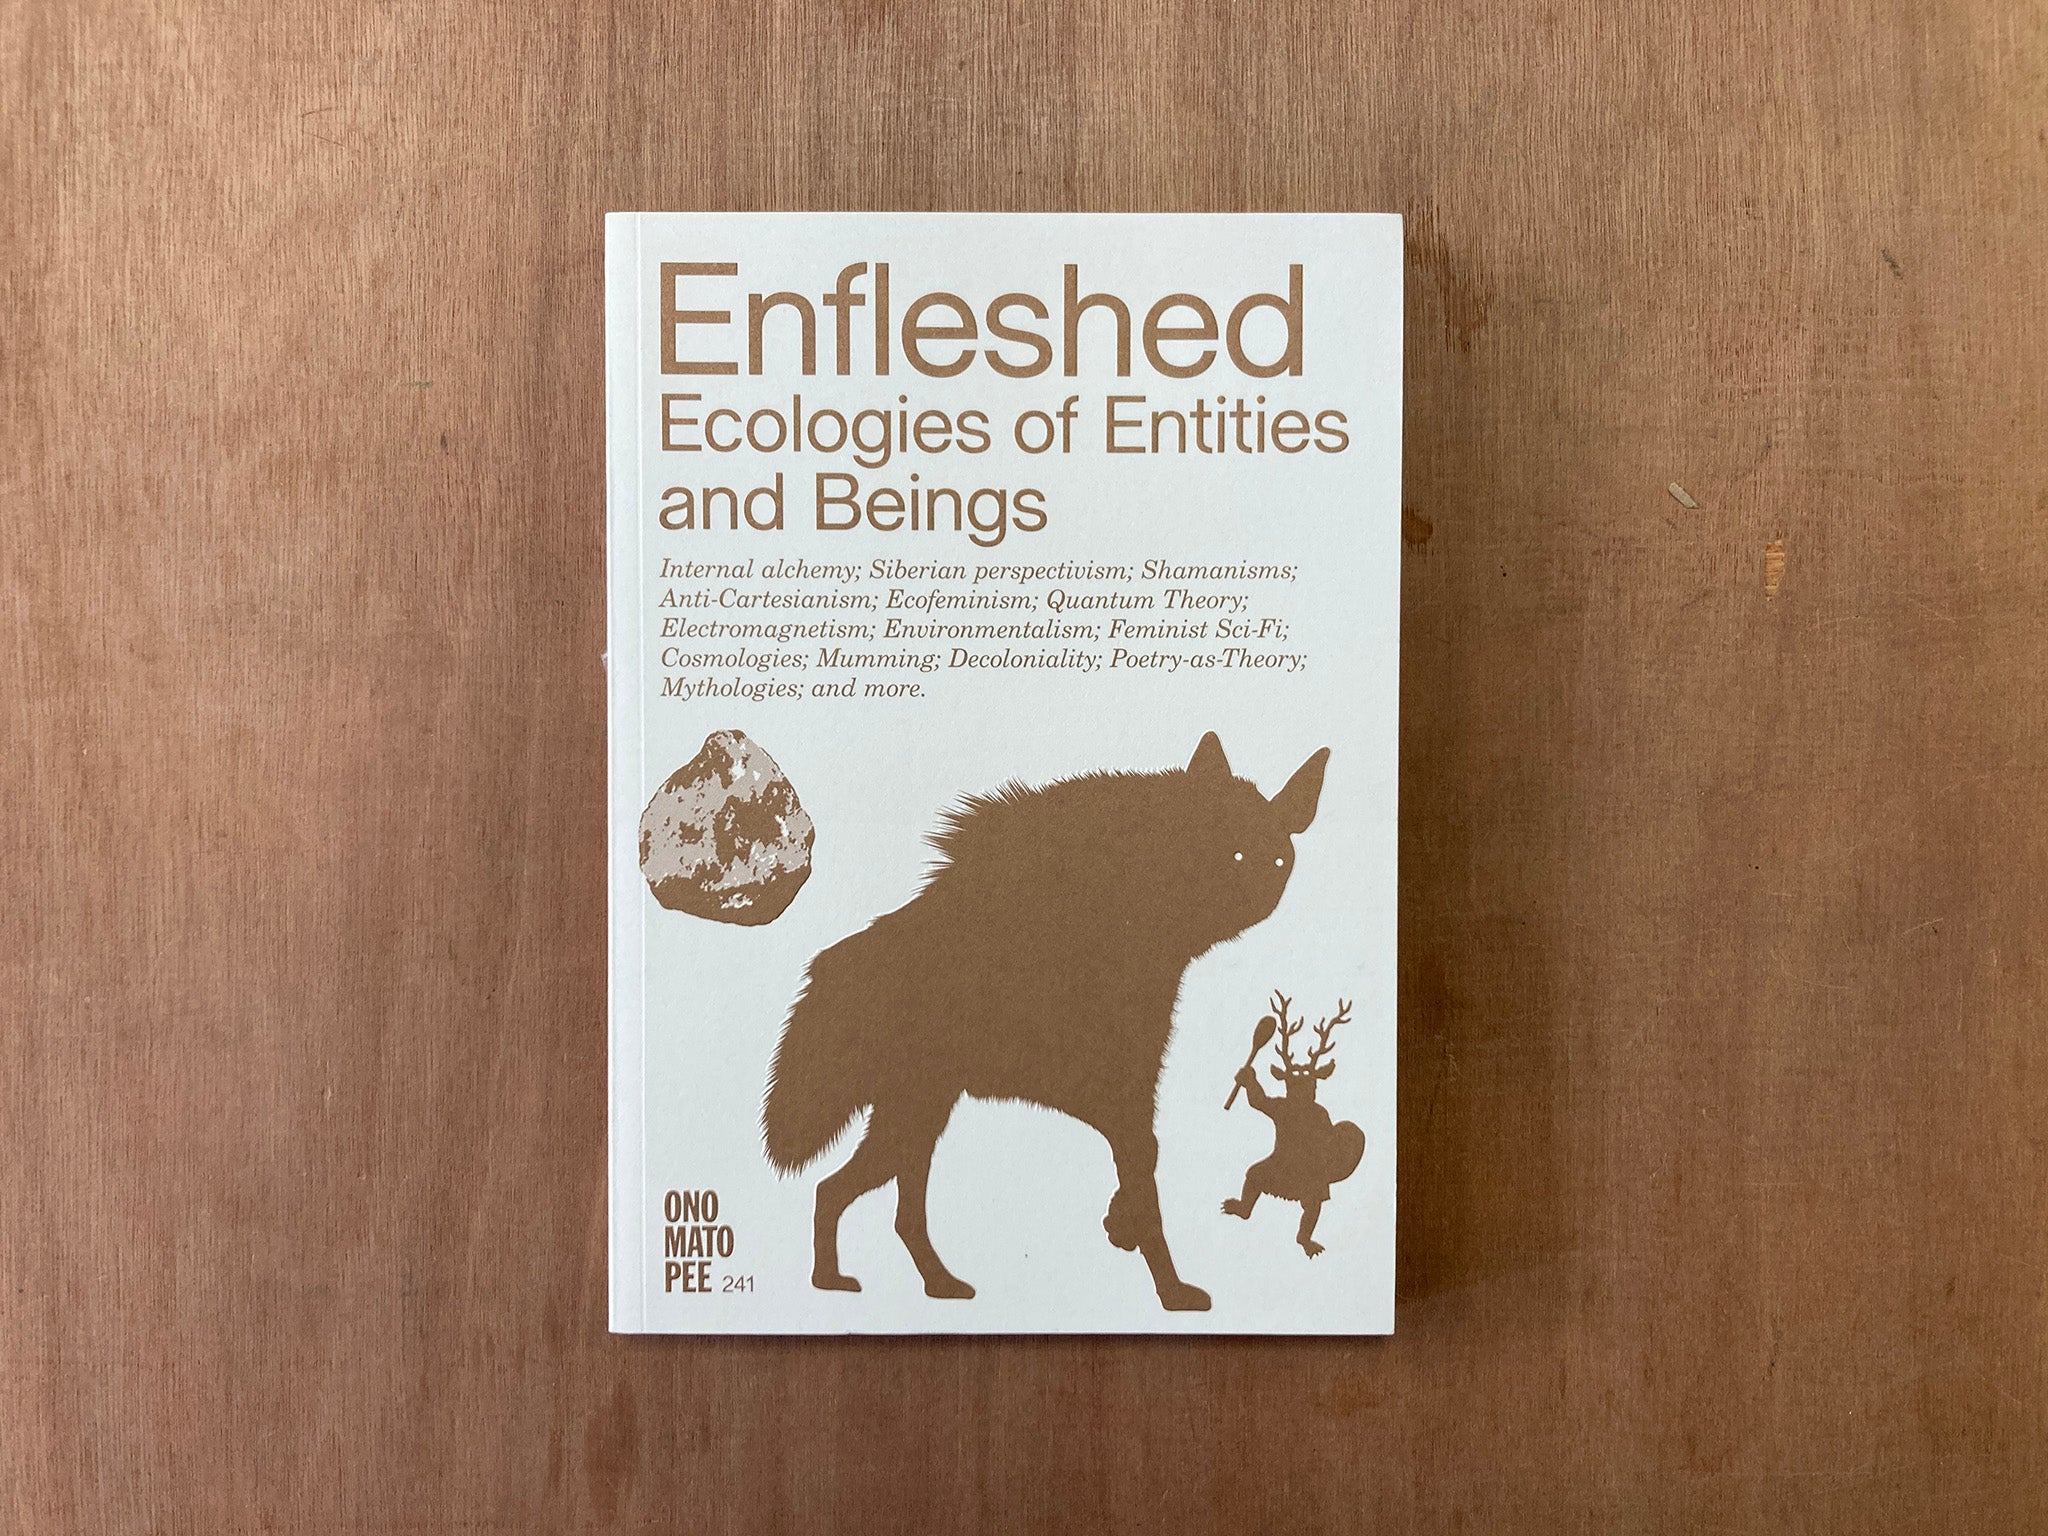 ENFLESHED: ECOLOGIES OF ENTITIES AND BEINGS edited by Kristiina Koskentola and Marjolein van der Loo